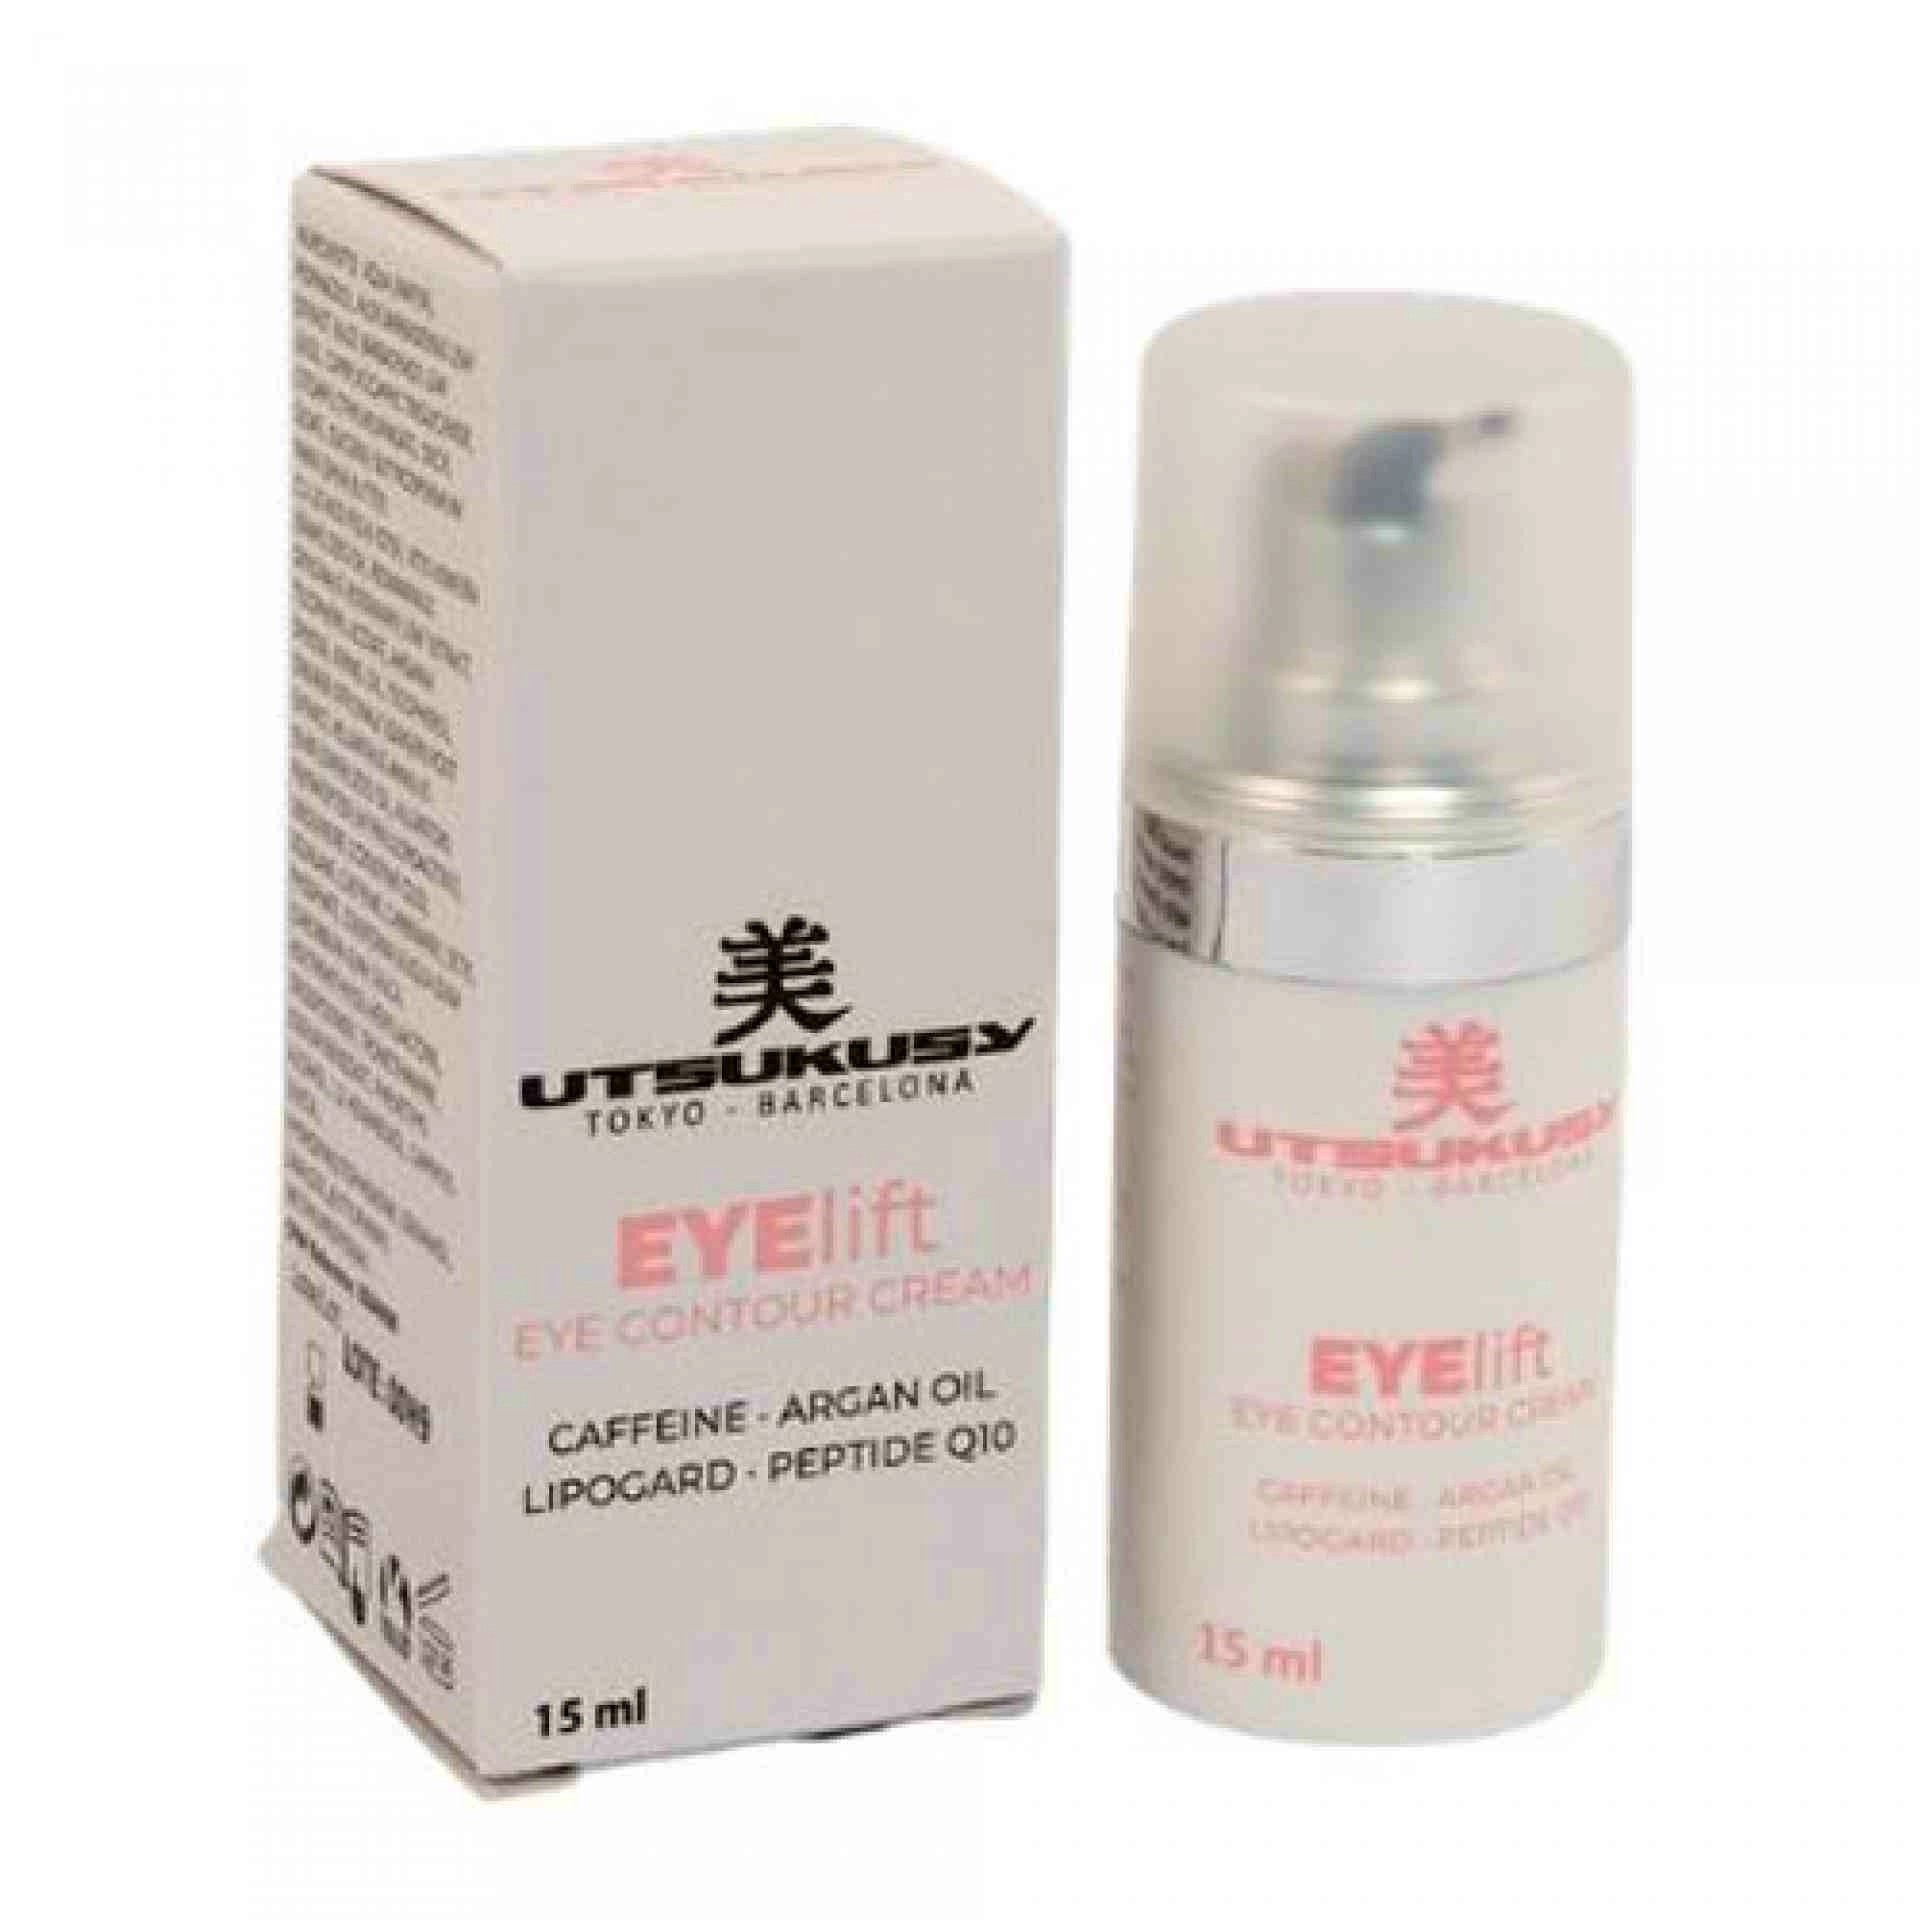 Eye Lift Cream | Defatigante de ojos - Utsukusy ®